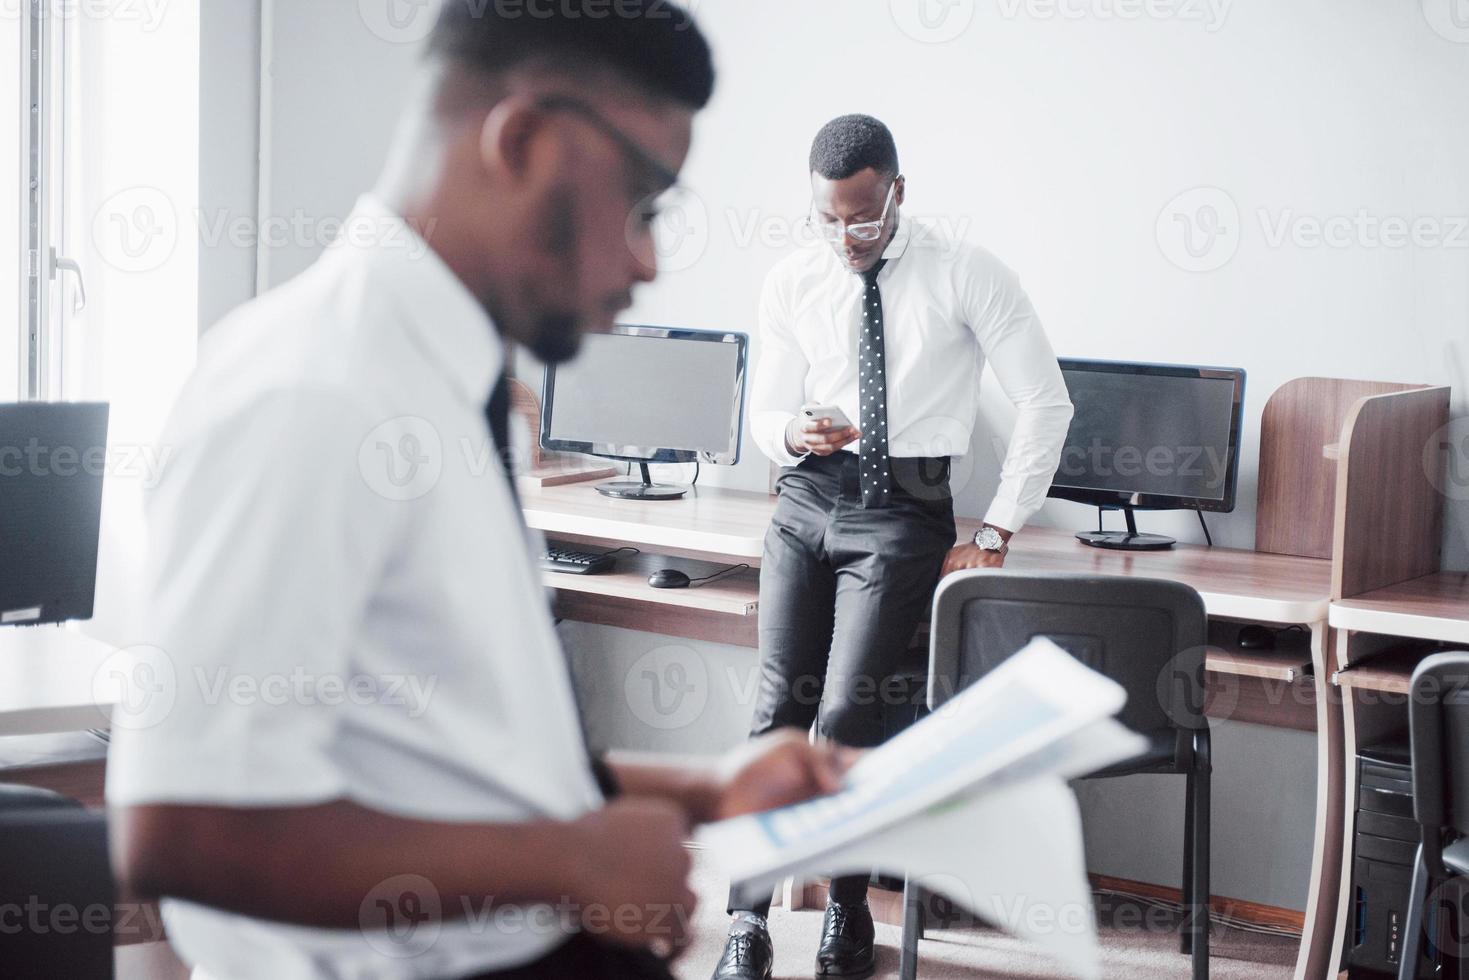 discutir un proyecto. Dos hombres de negocios negros en ropa formal discutiendo algo mientras uno de ellos apunta un papel foto